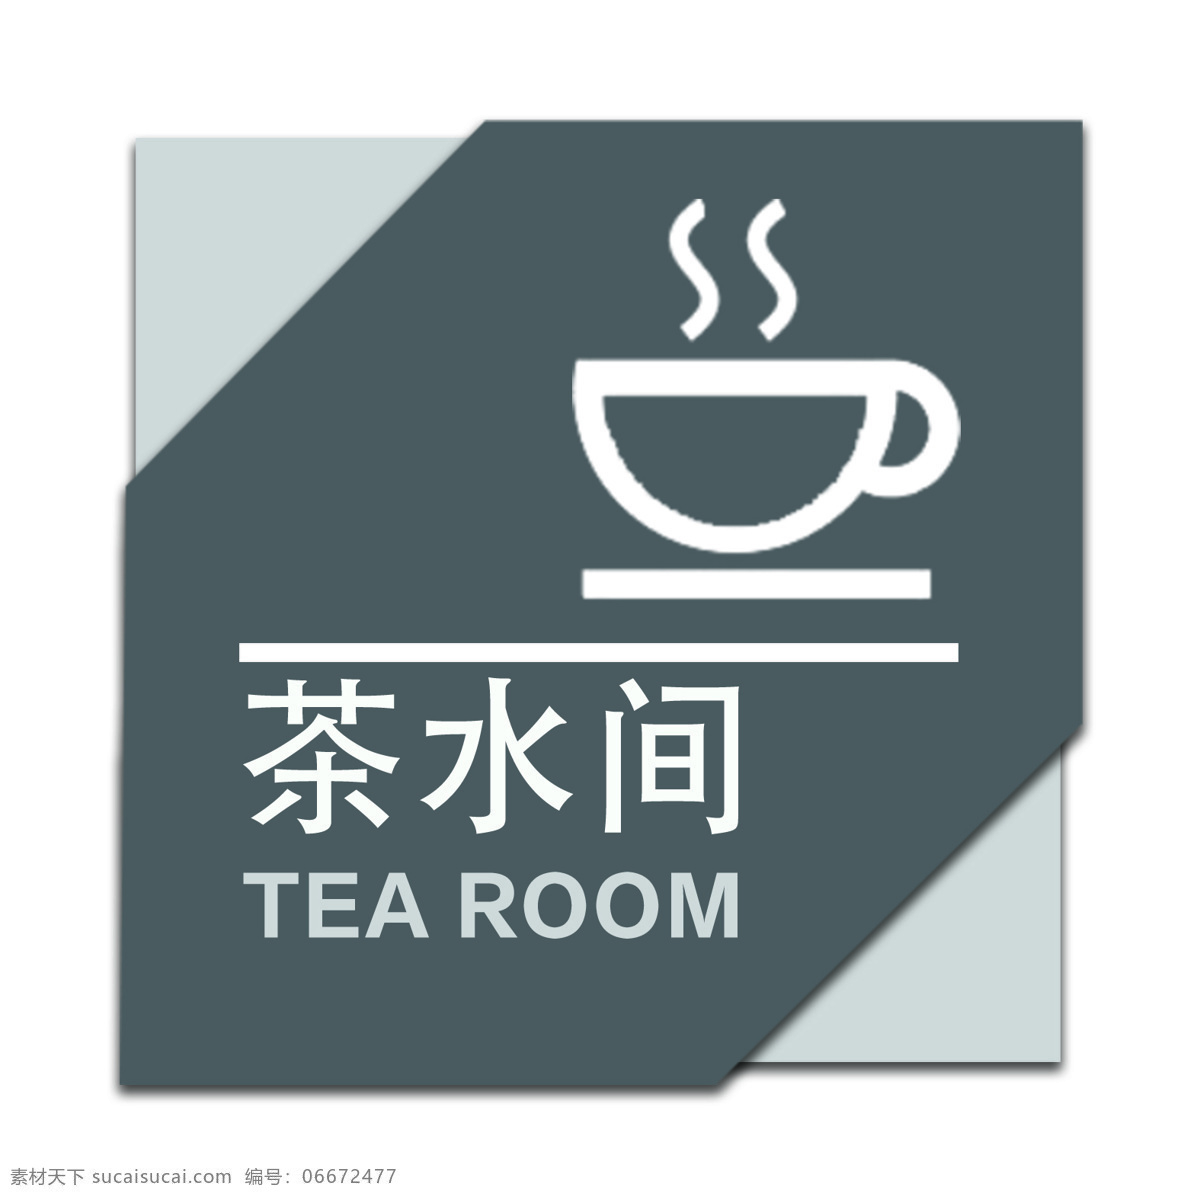 导视 标志 标识 公共茶水间 导视牌 公共场所 tea room 茶水 间 标志图标 公共标识标志